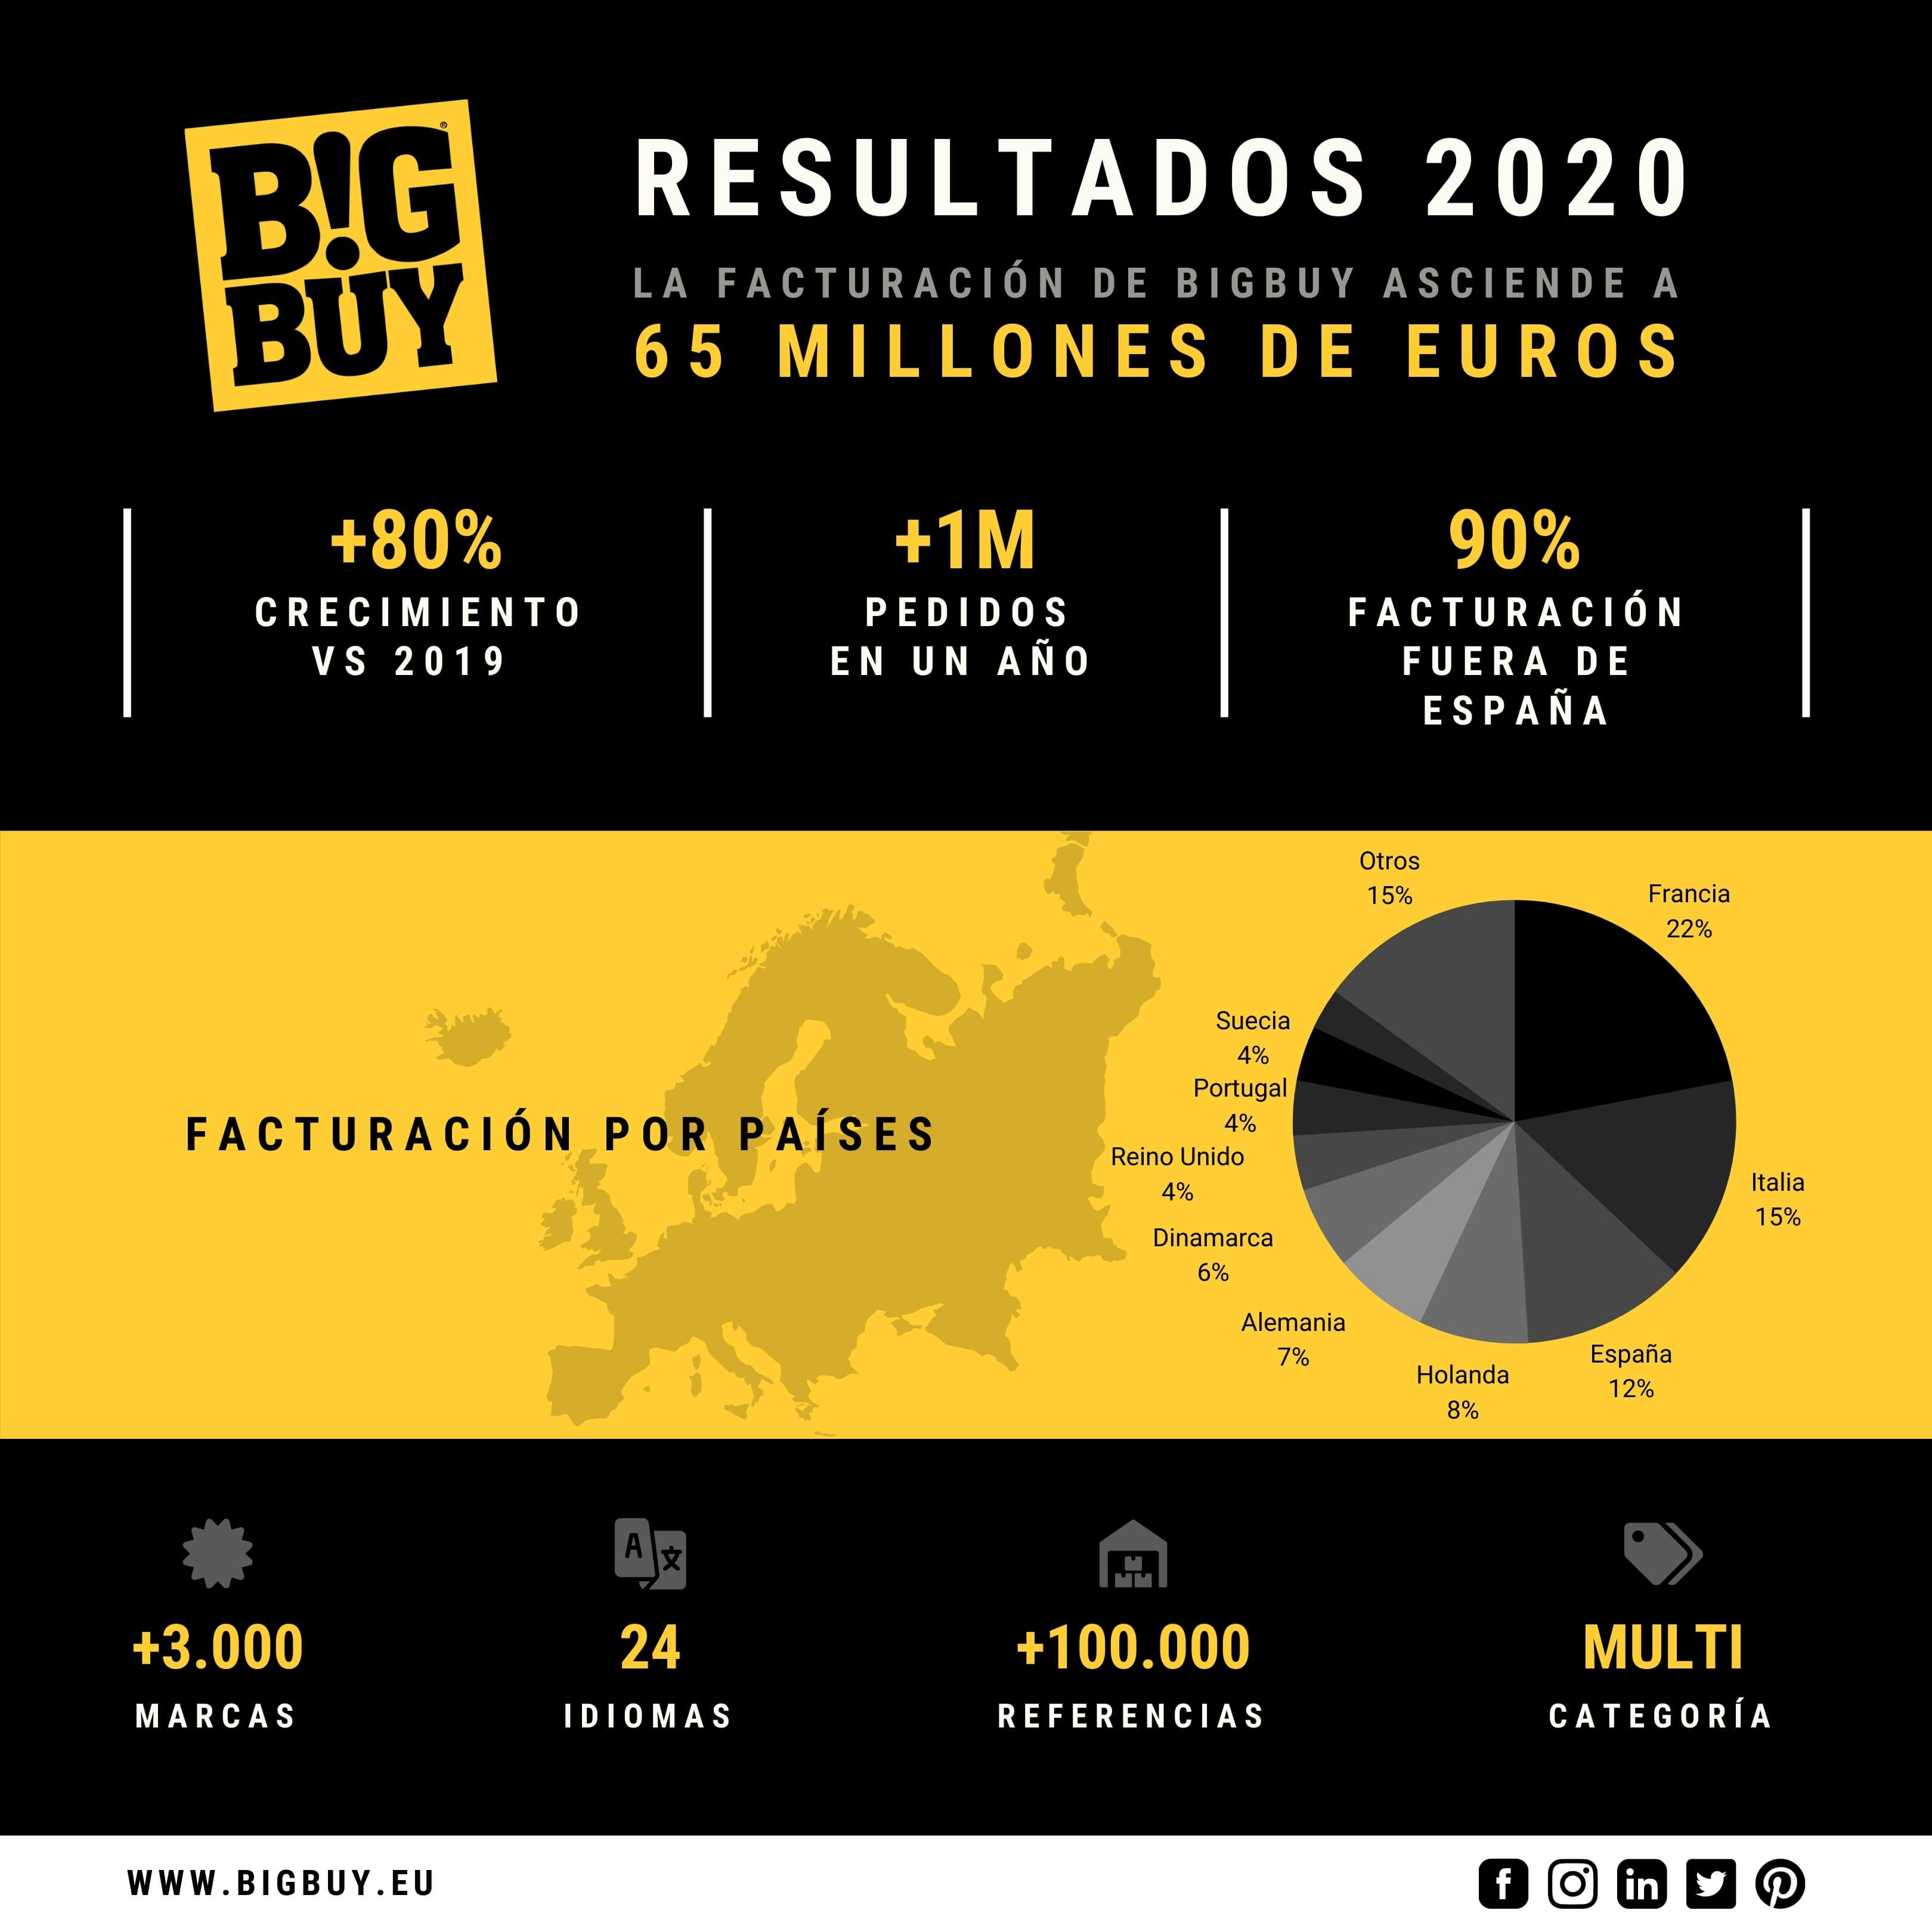 BigBuy cierra 2020 con una facturación de 65 millones de euros y factura el 90% fuera de España